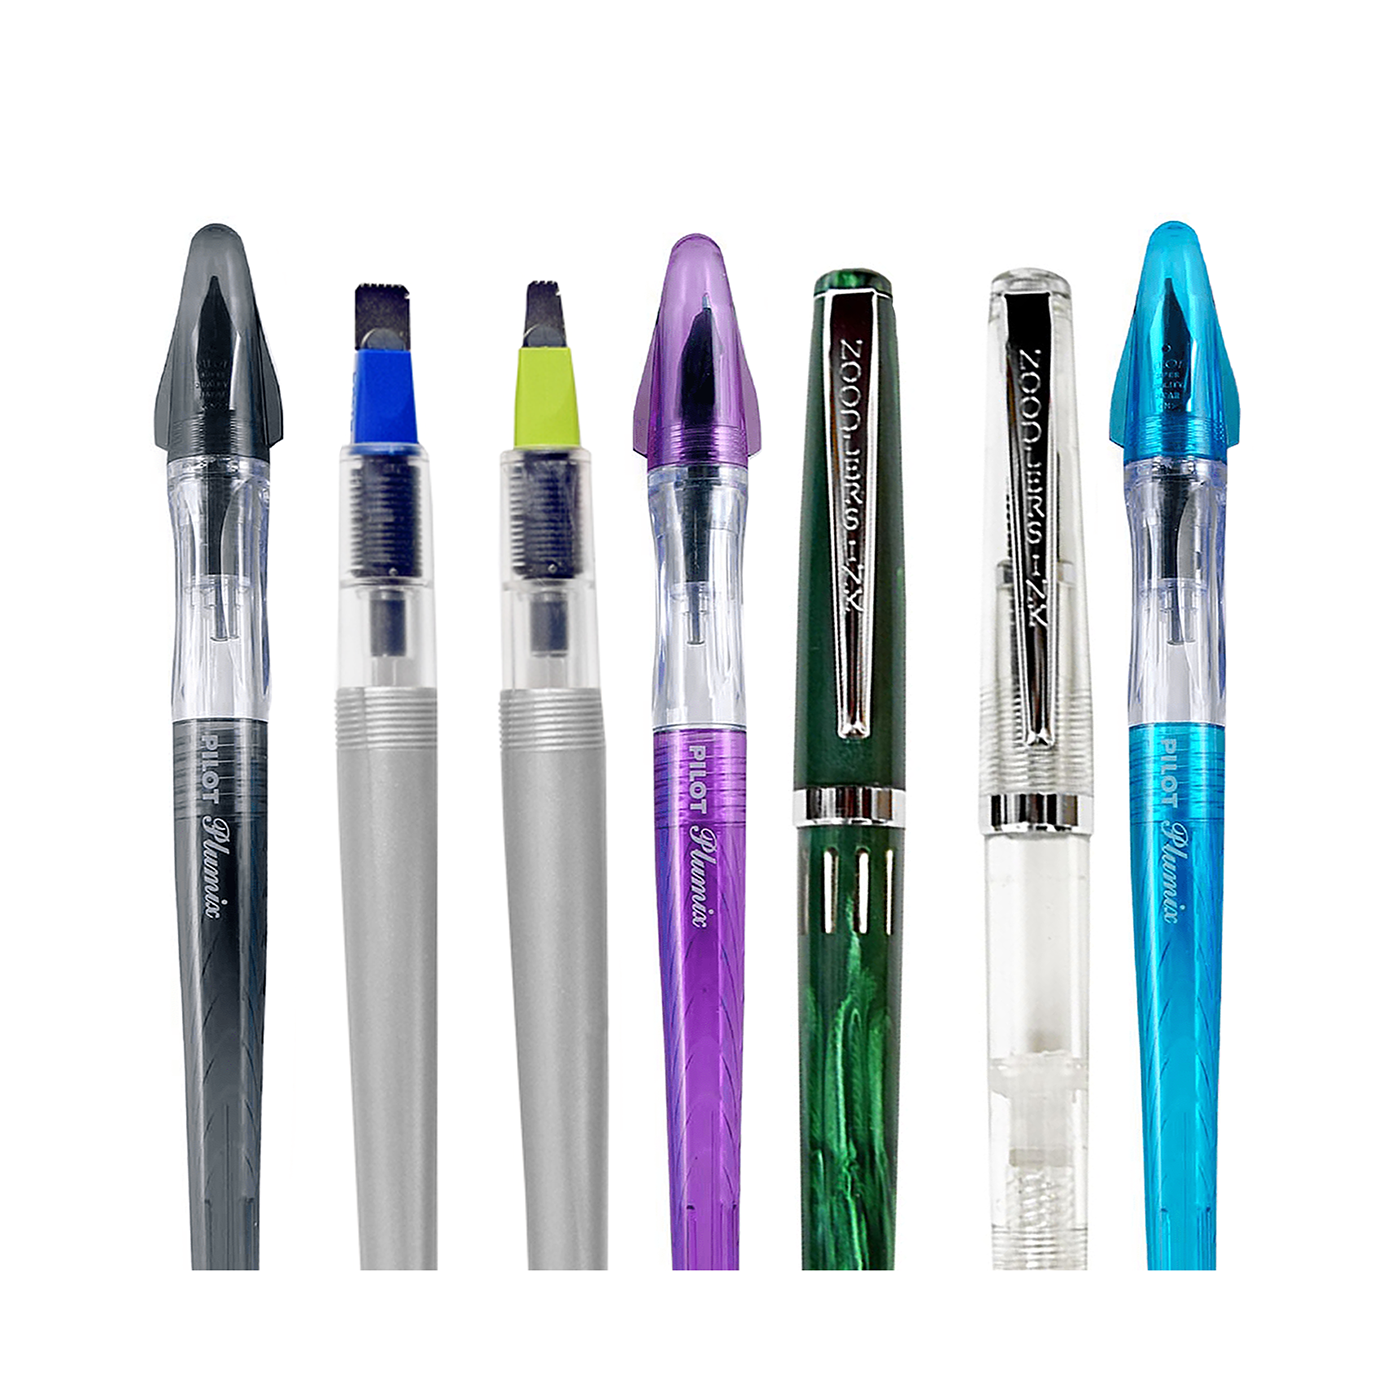 Pilot Parallel Pen, Original Sizes Set